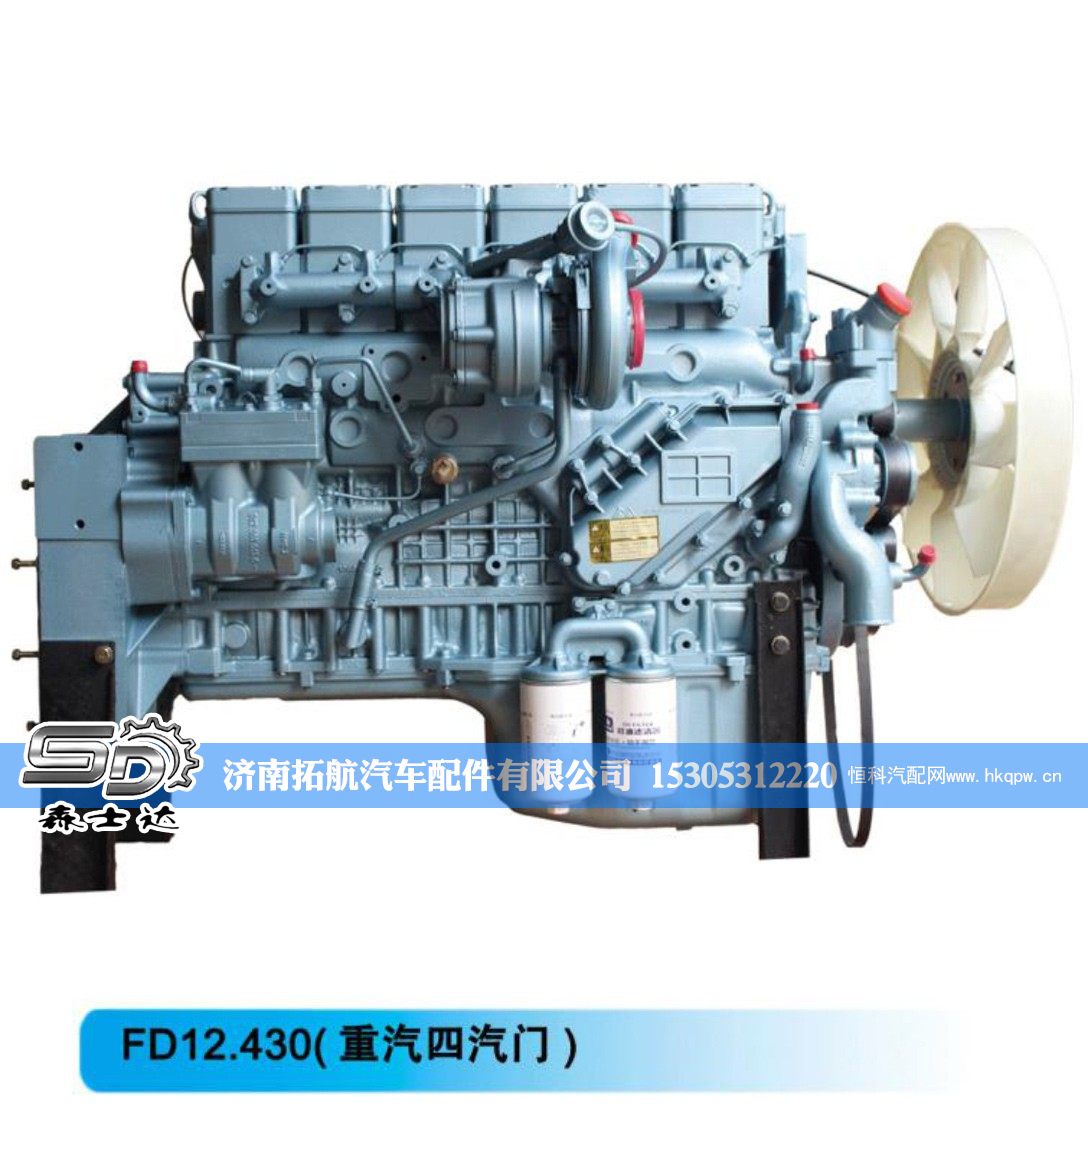 ,FD12.430(重汽四汽门)重汽发动机,济南拓航汽车配件有限公司